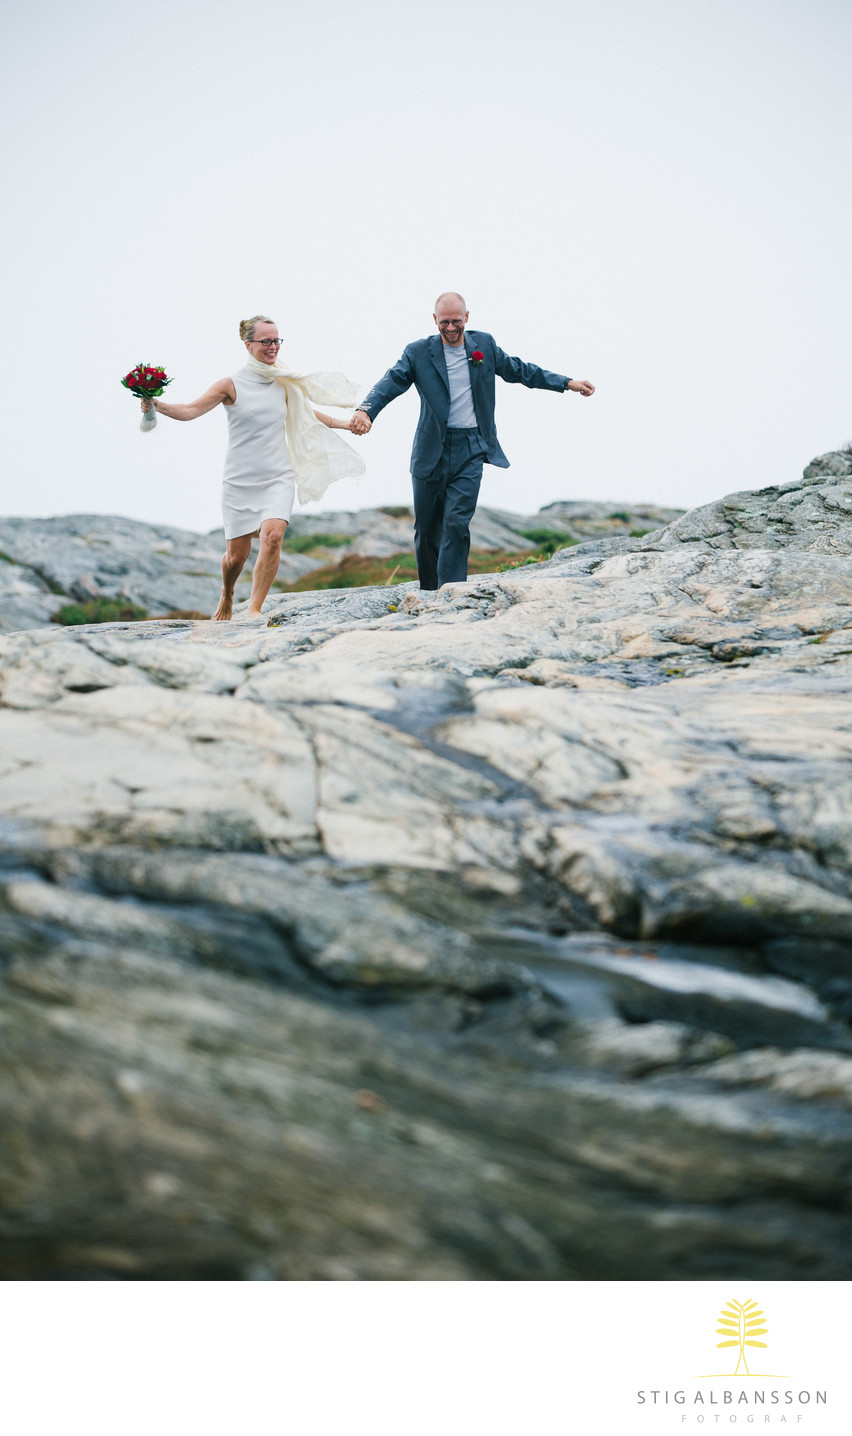 Fotografering av brudpar springer på klippor Västkusten